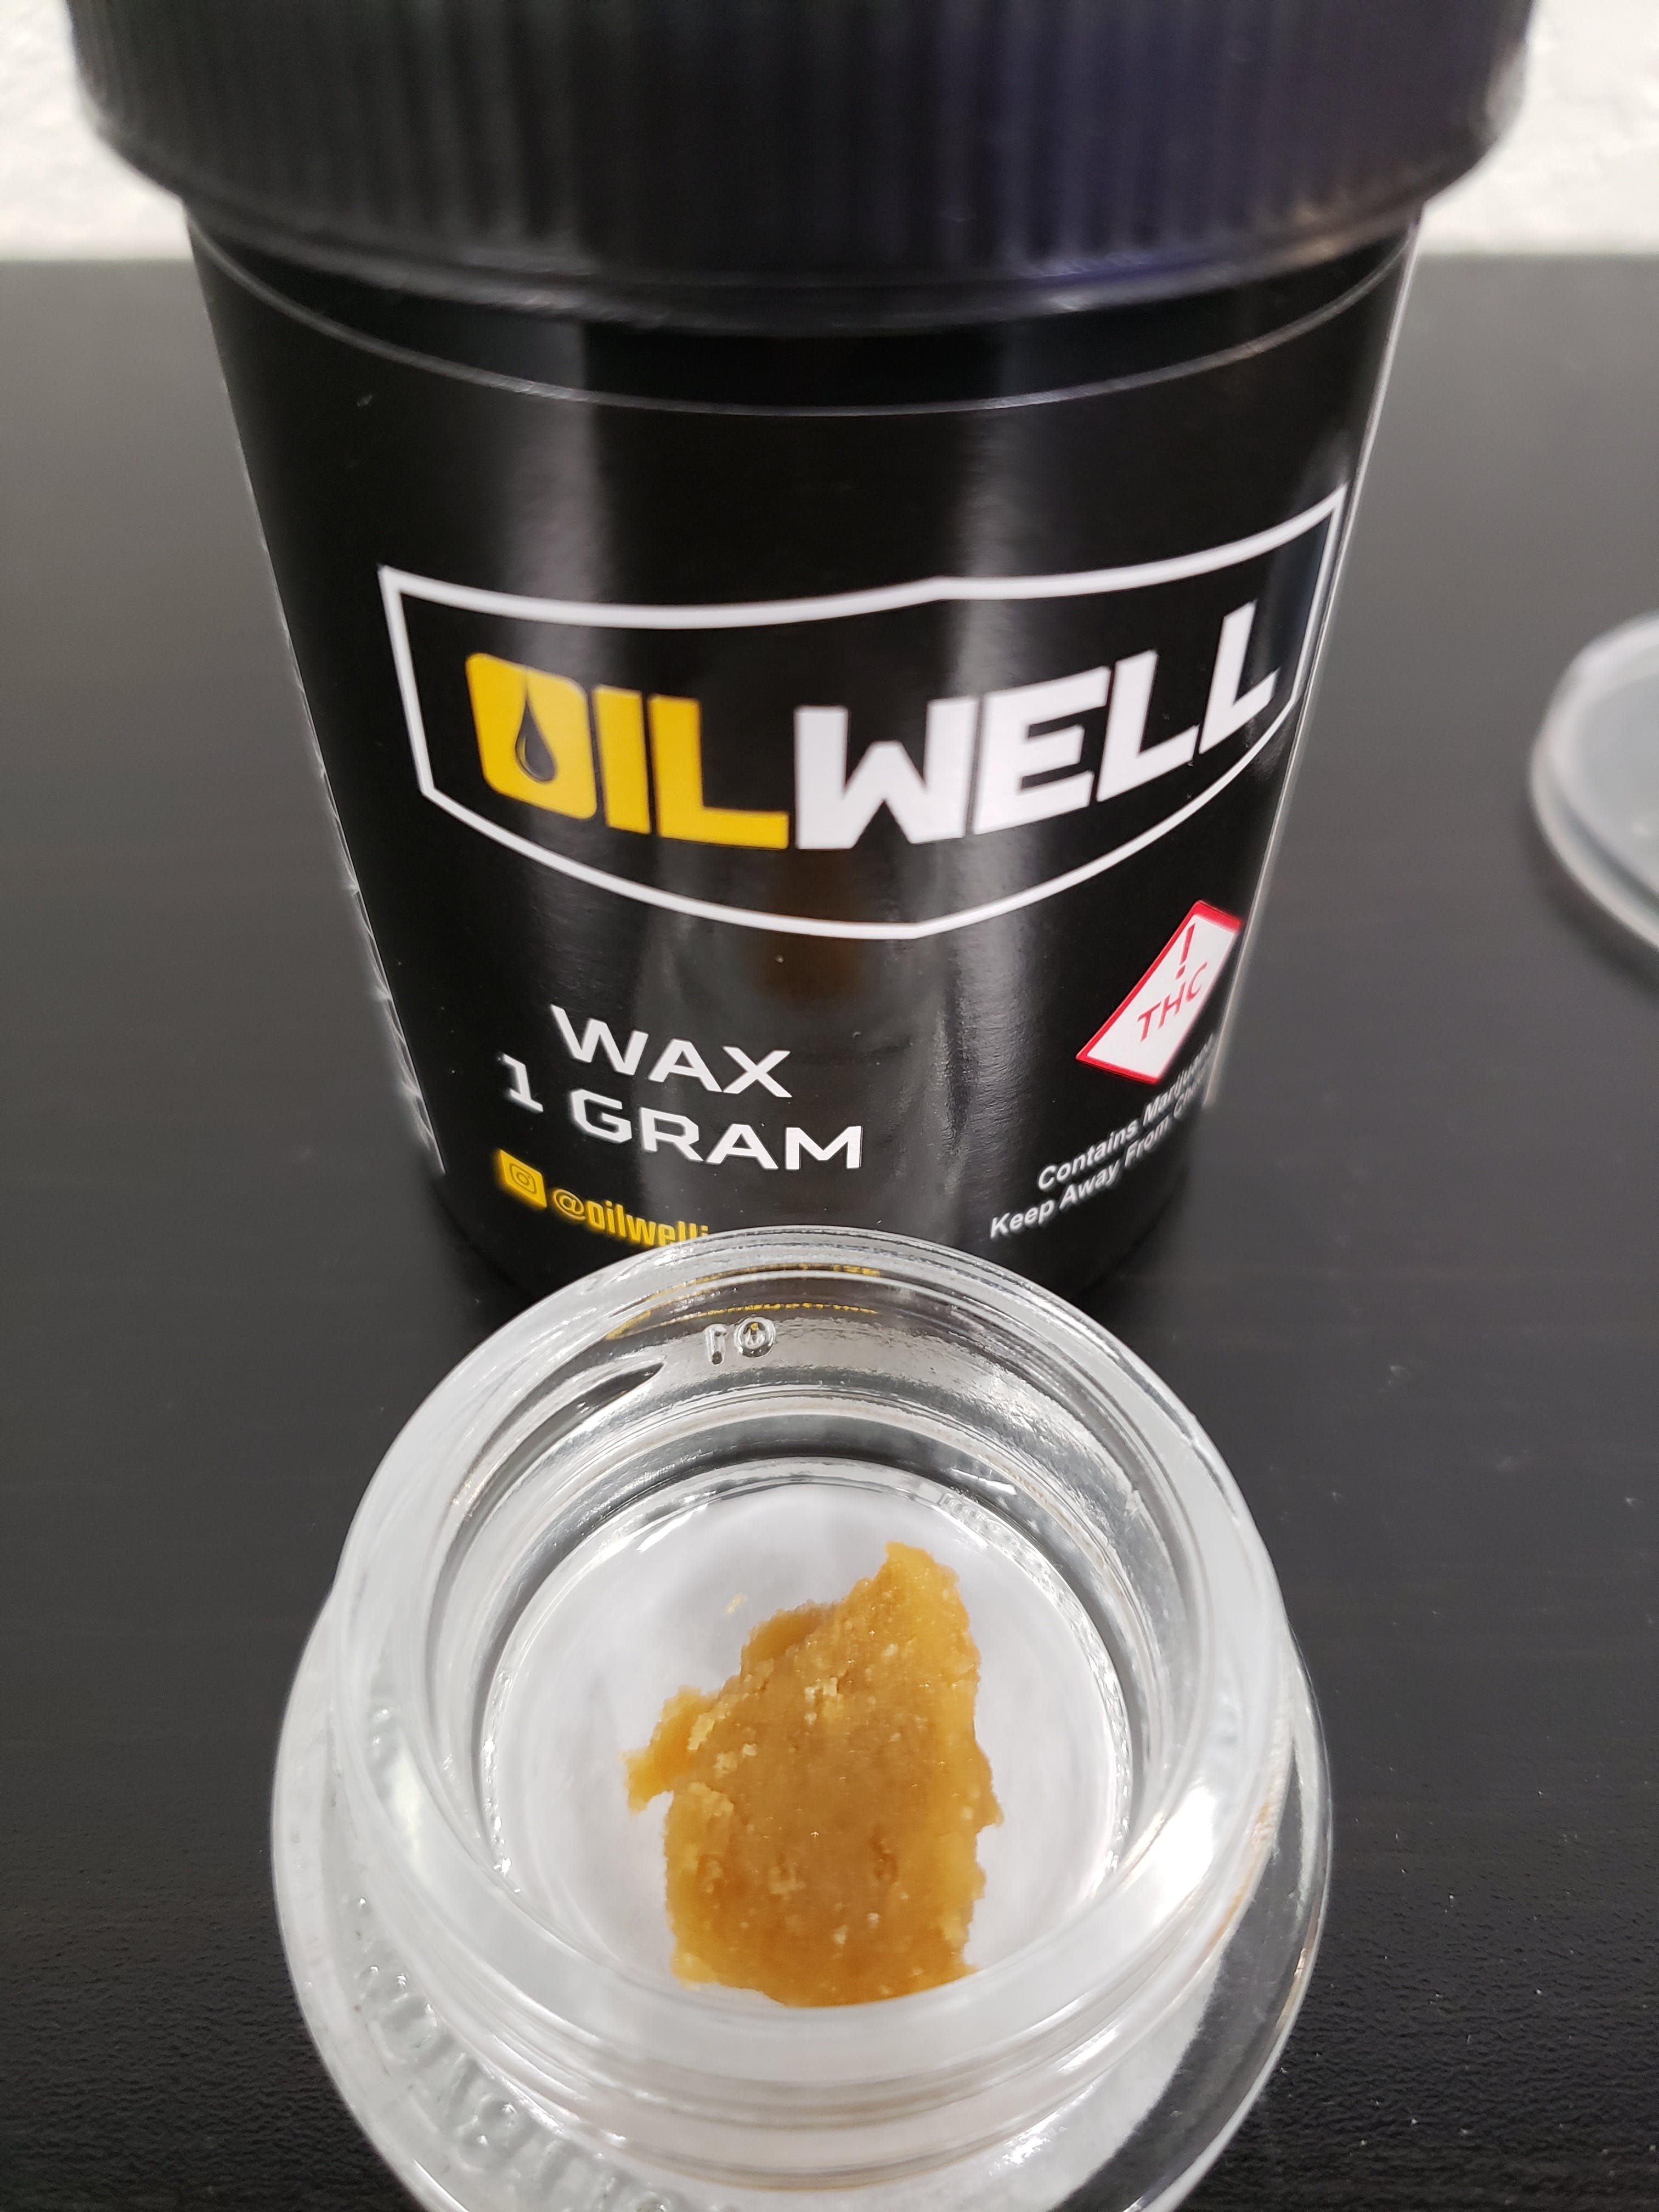 Oil Well Wax